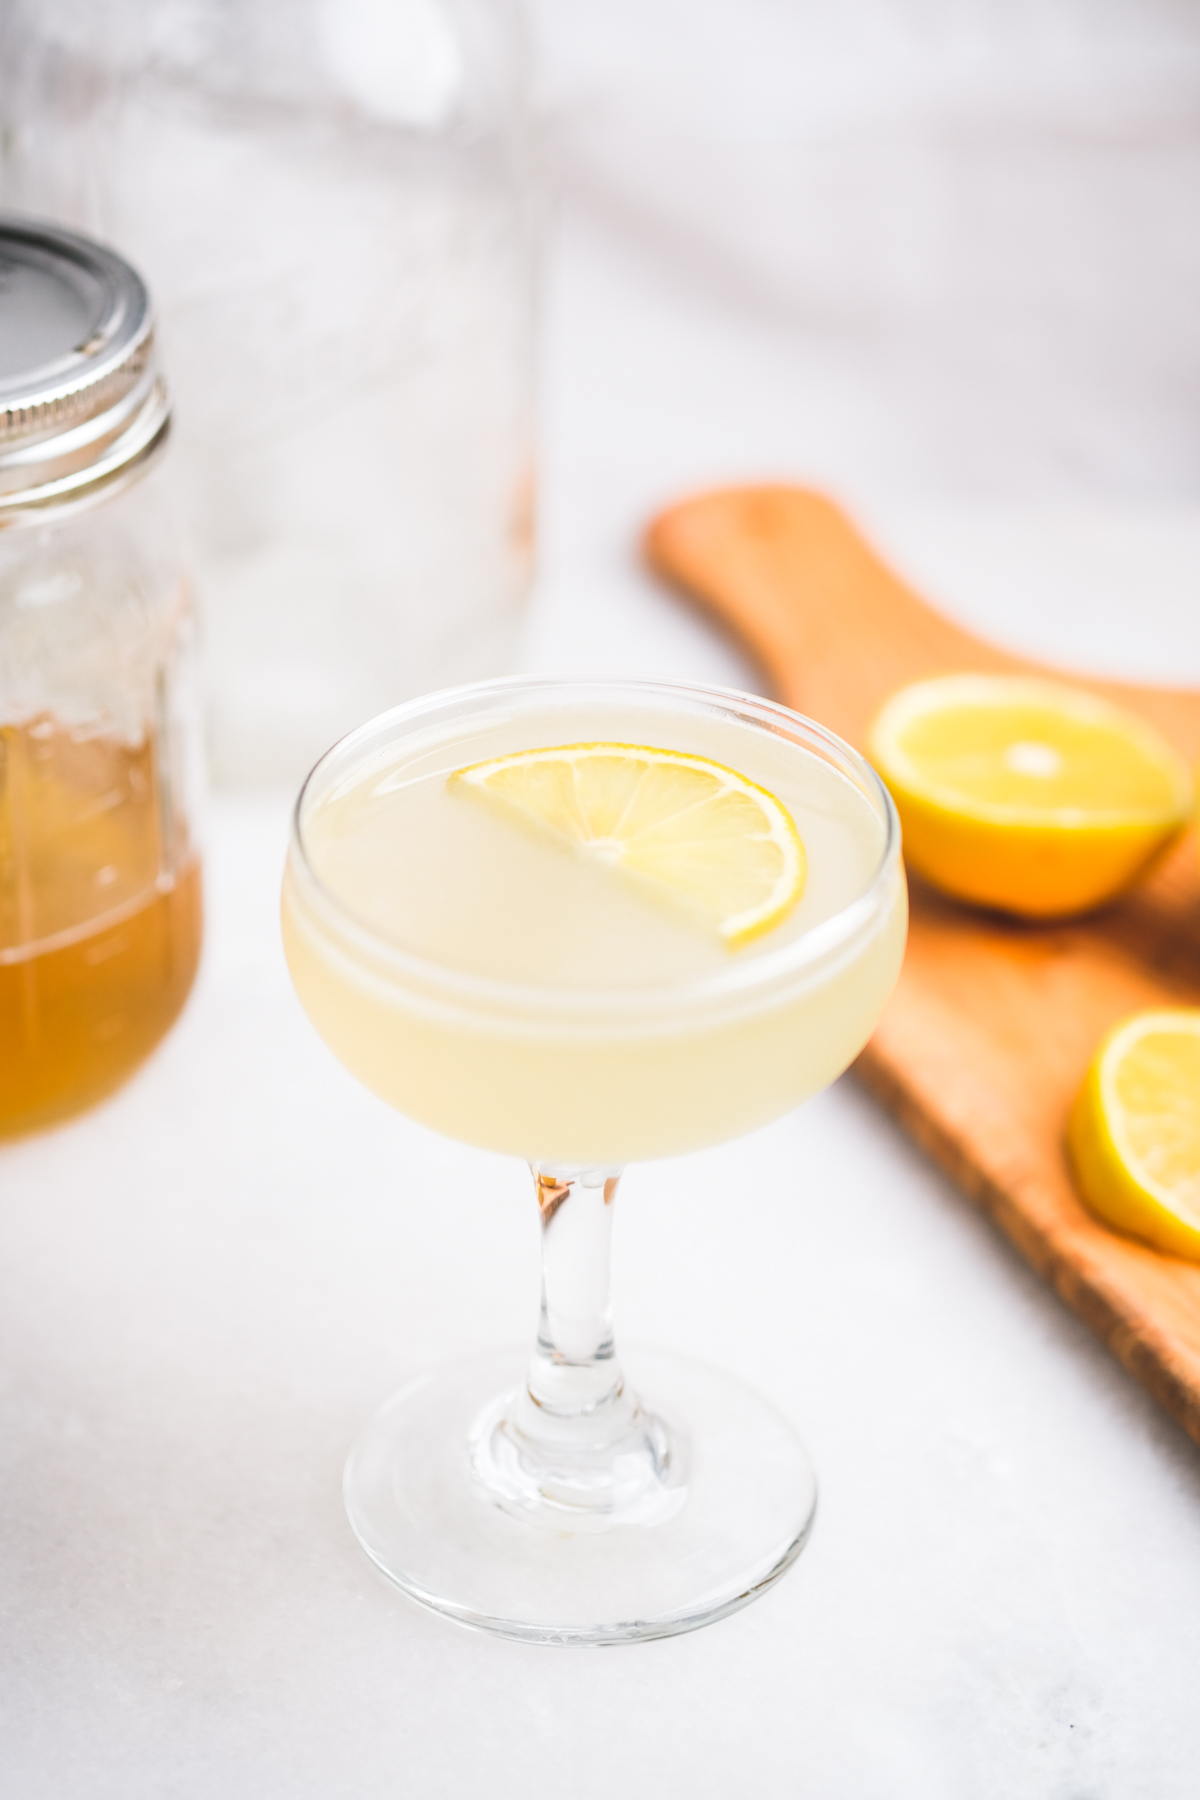 honey lemon gimlet cocktail with lemon wedge